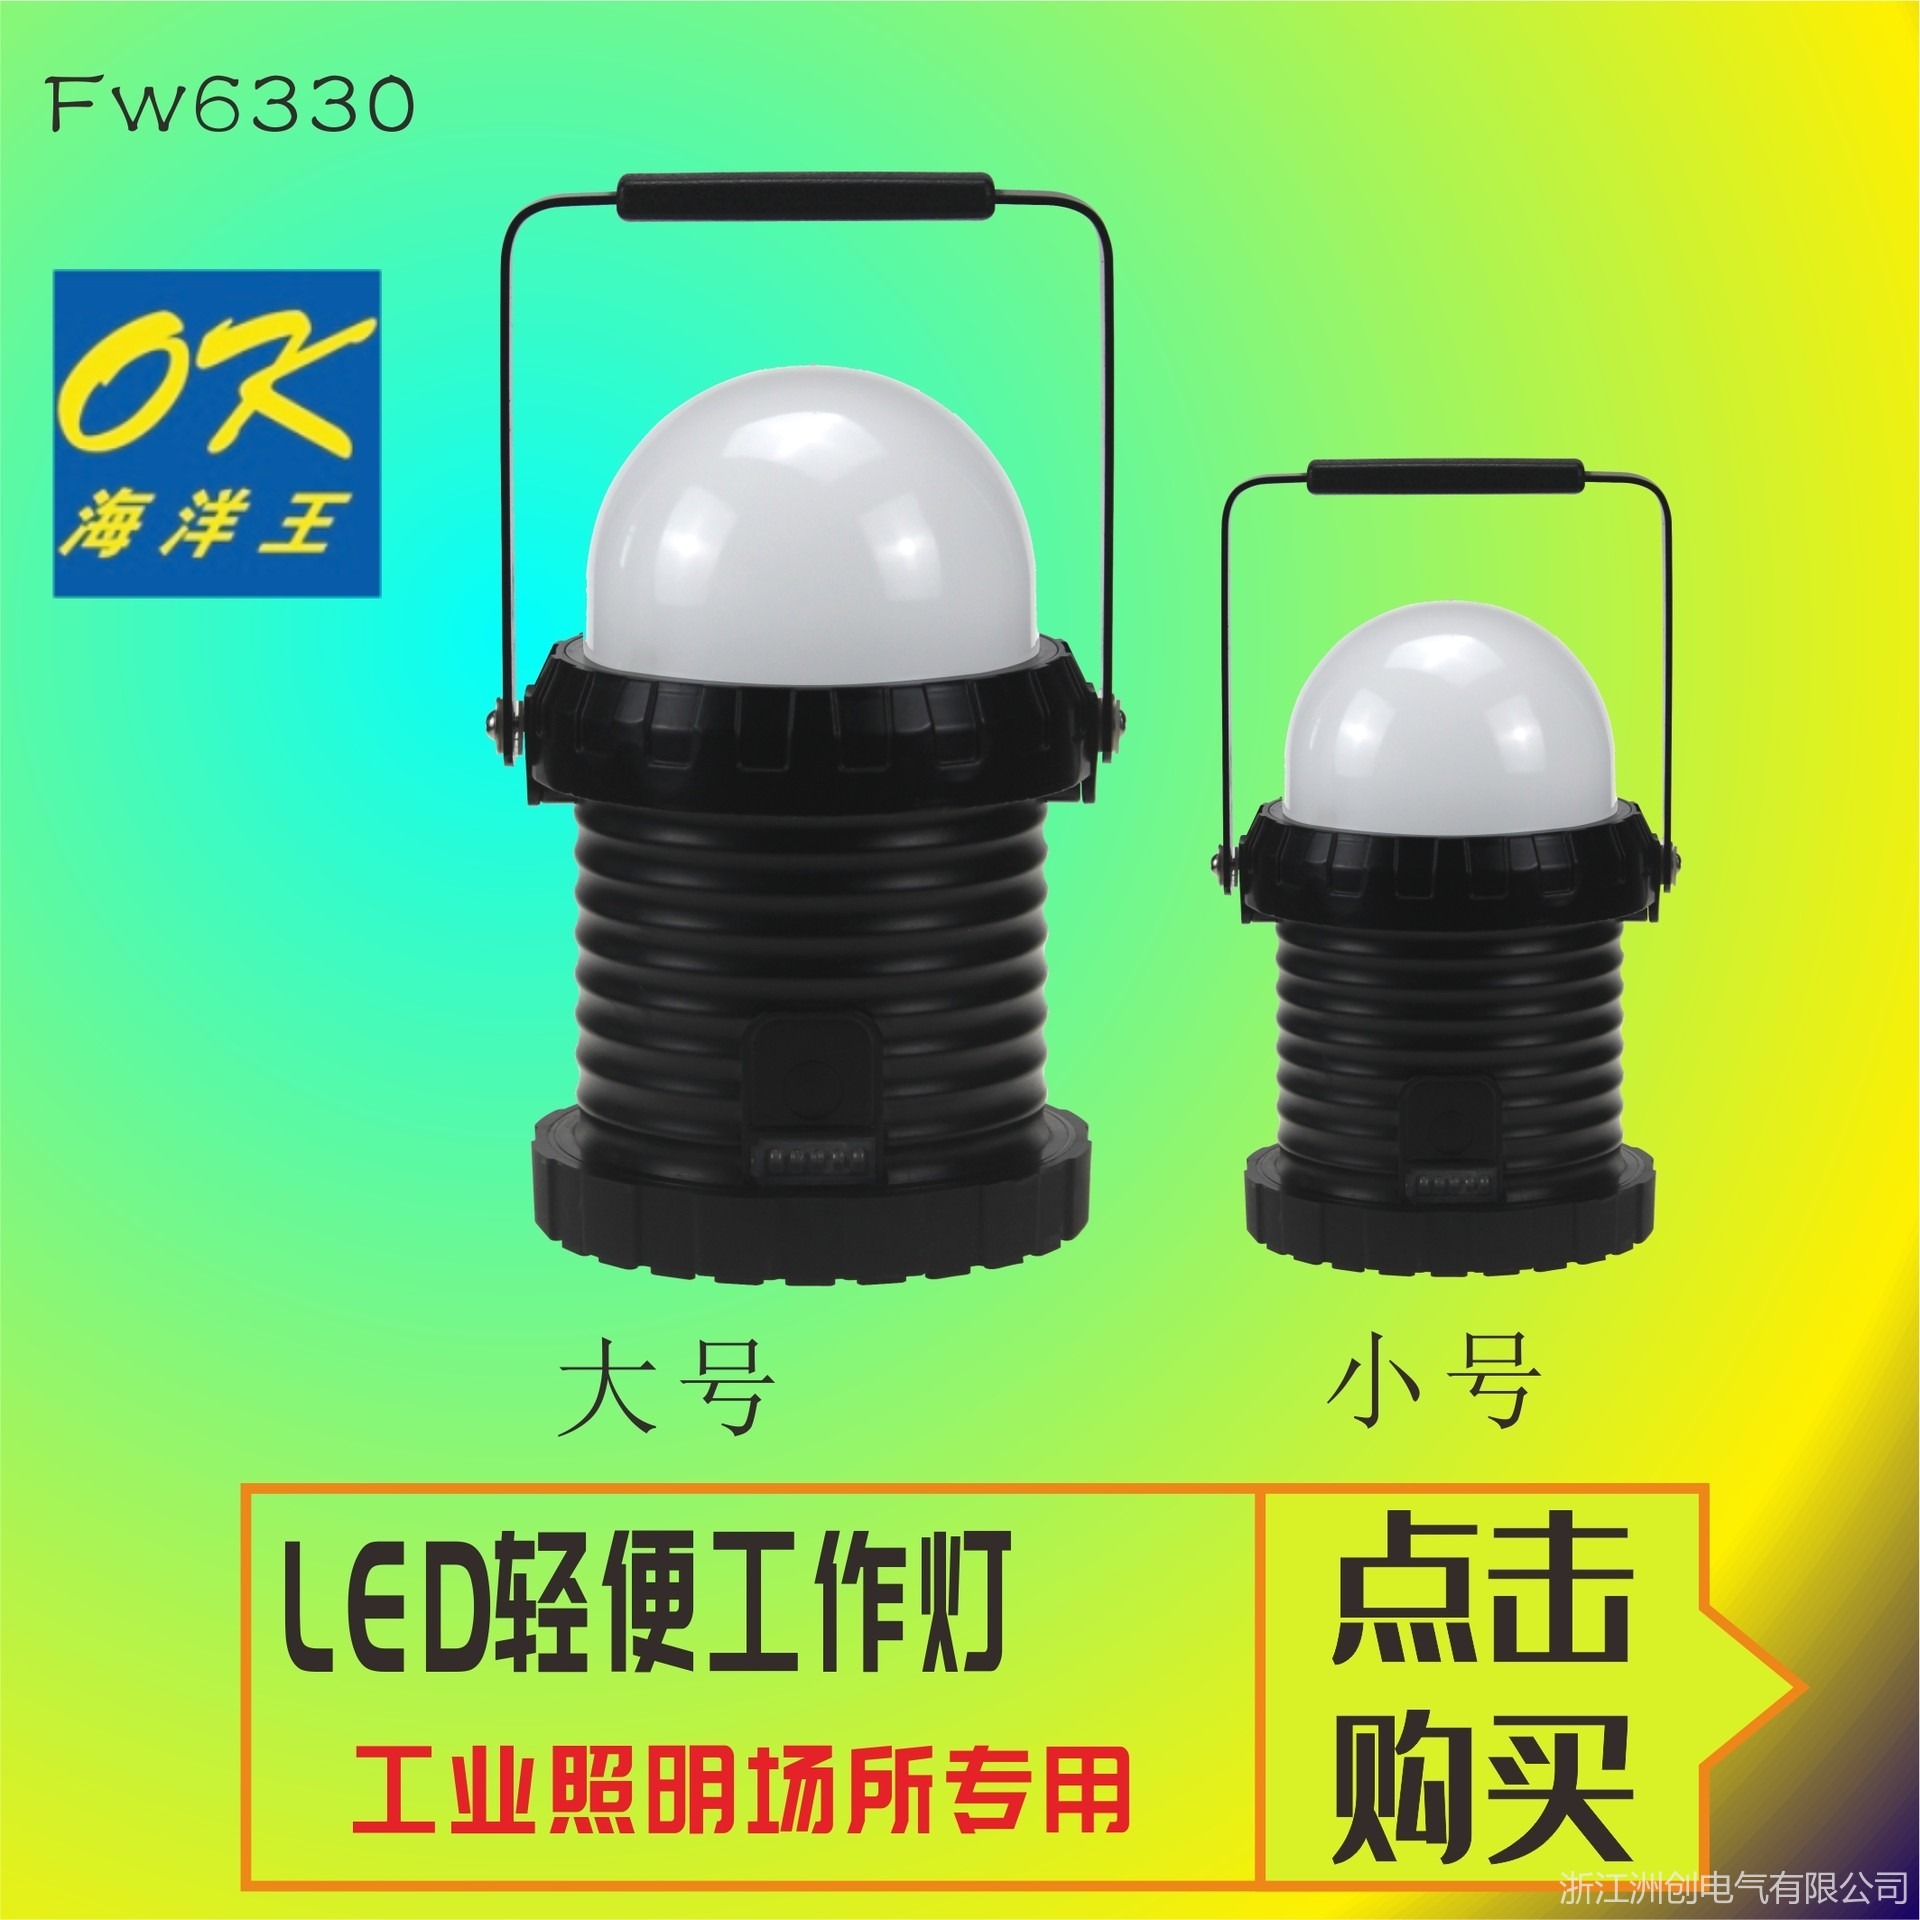 海洋王FW6330-LED轻便工作灯 磁吸式LED手提灯 带USB充电工作灯 巡查巡检手提探照灯